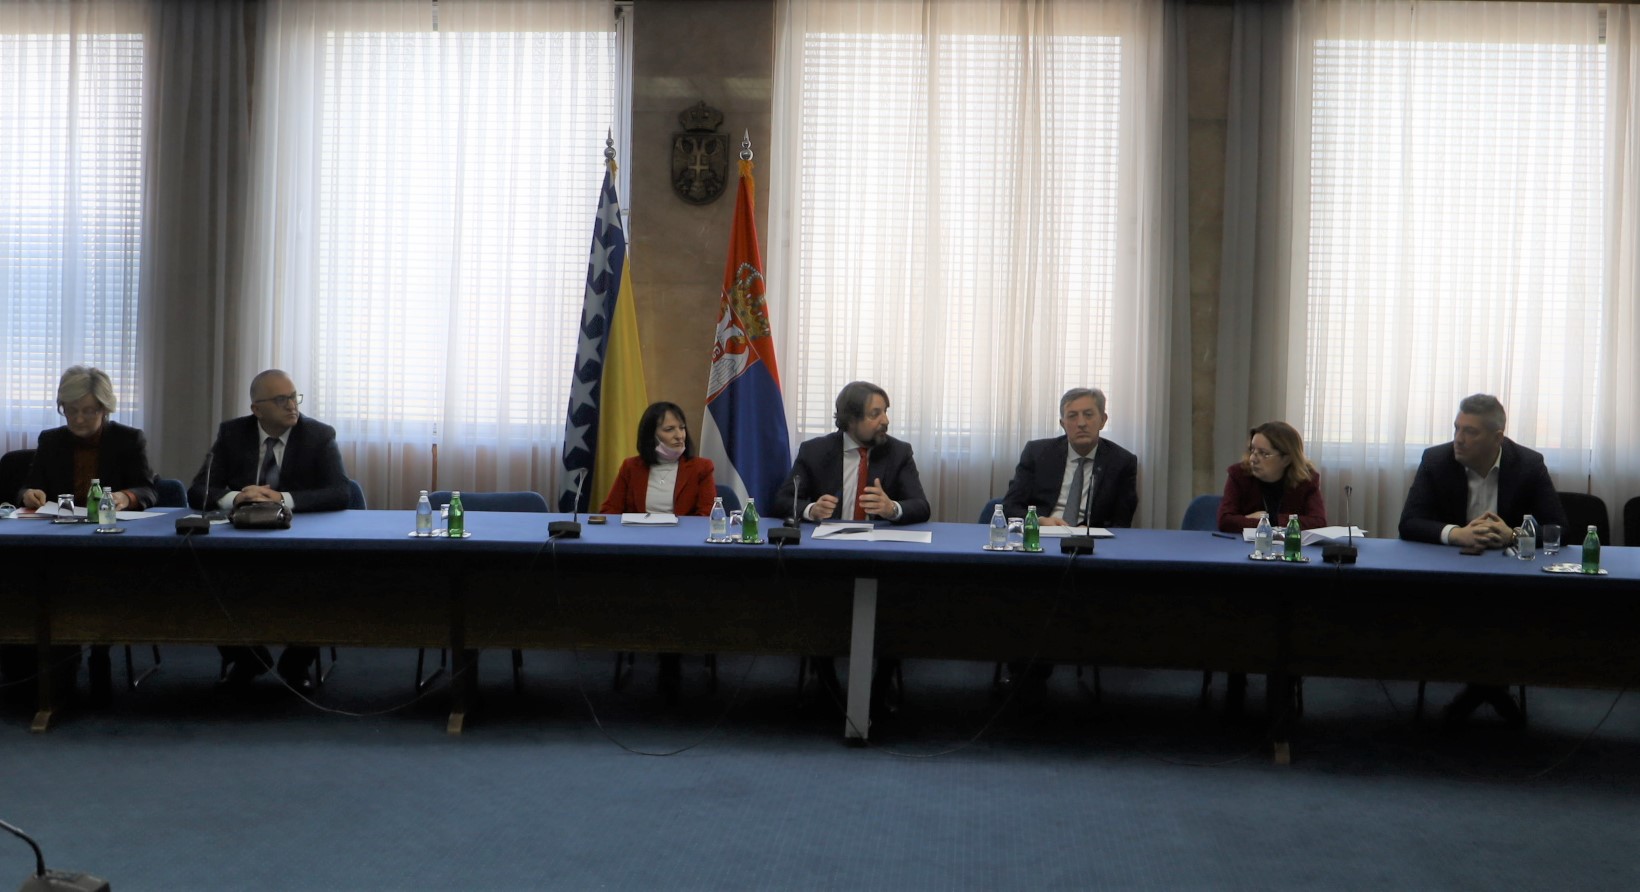 Посета представника институција надлежних за управљање људским ресурсима Републике Босне и Херцеговине СУК-у у оквиру Програма мобилне шеме (ReSPA), 3. и 4. март 2022.